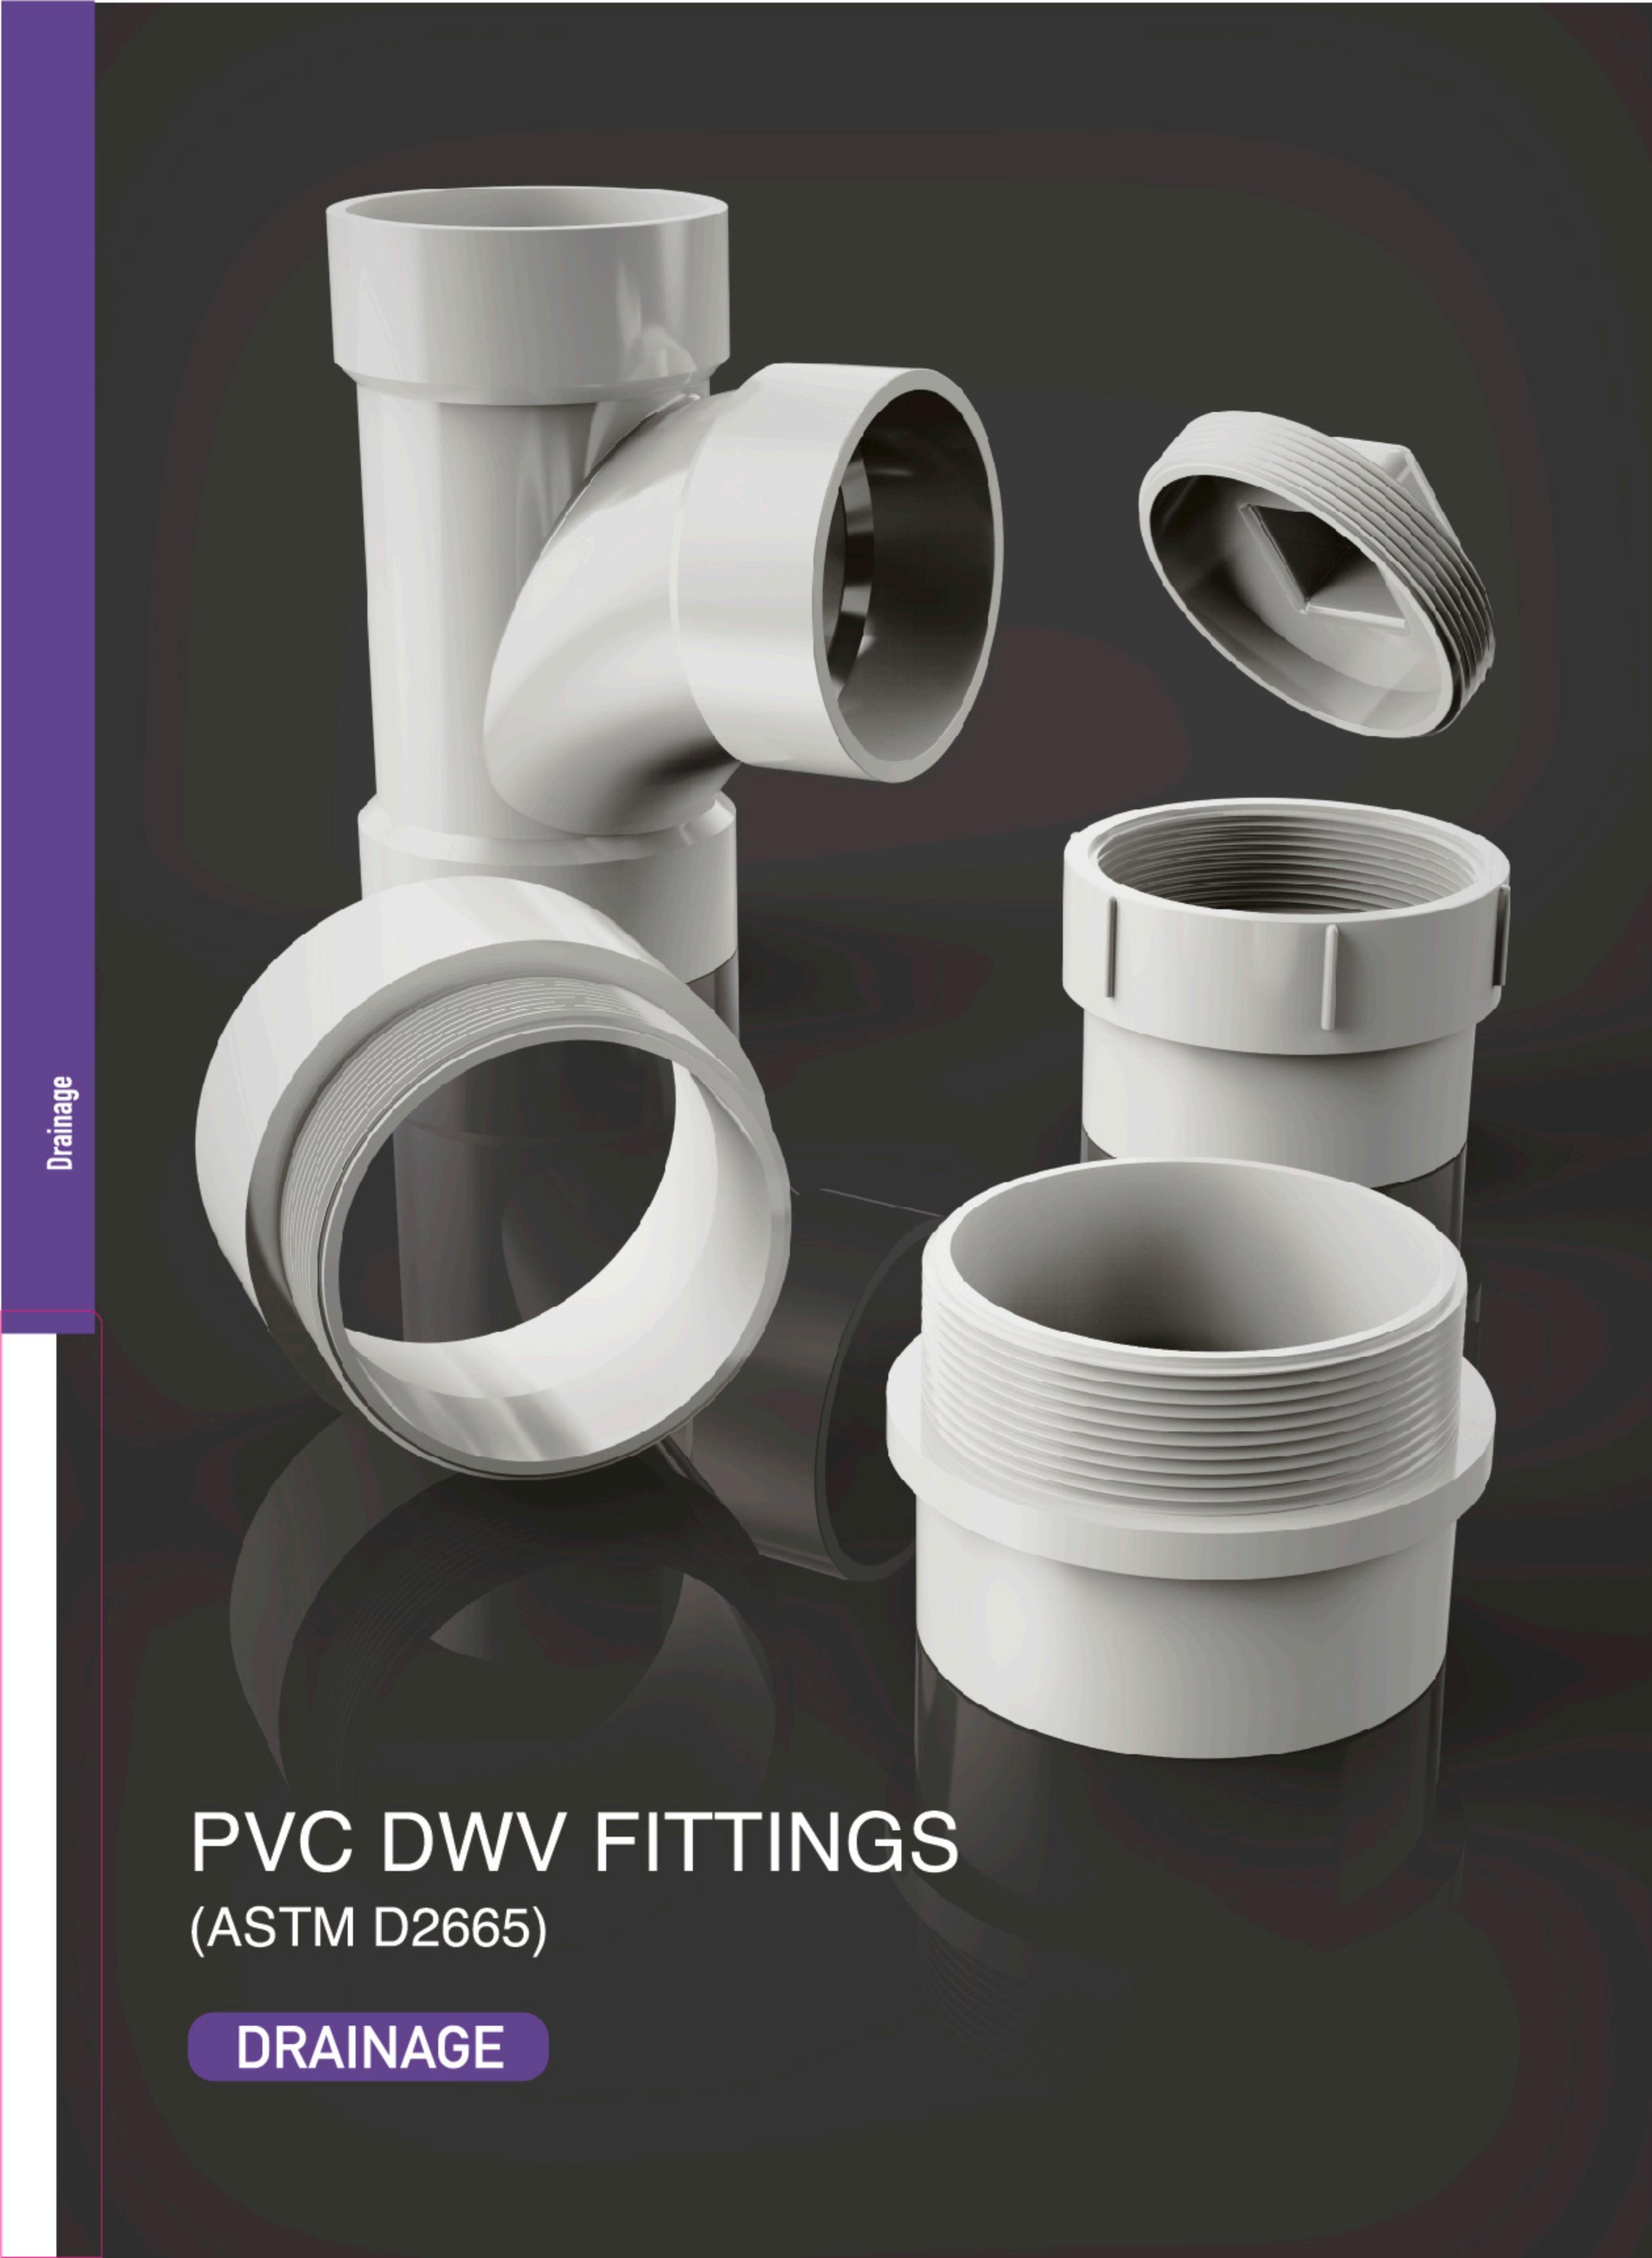 PVC DWV FITTINGS FOR ASTM D2665